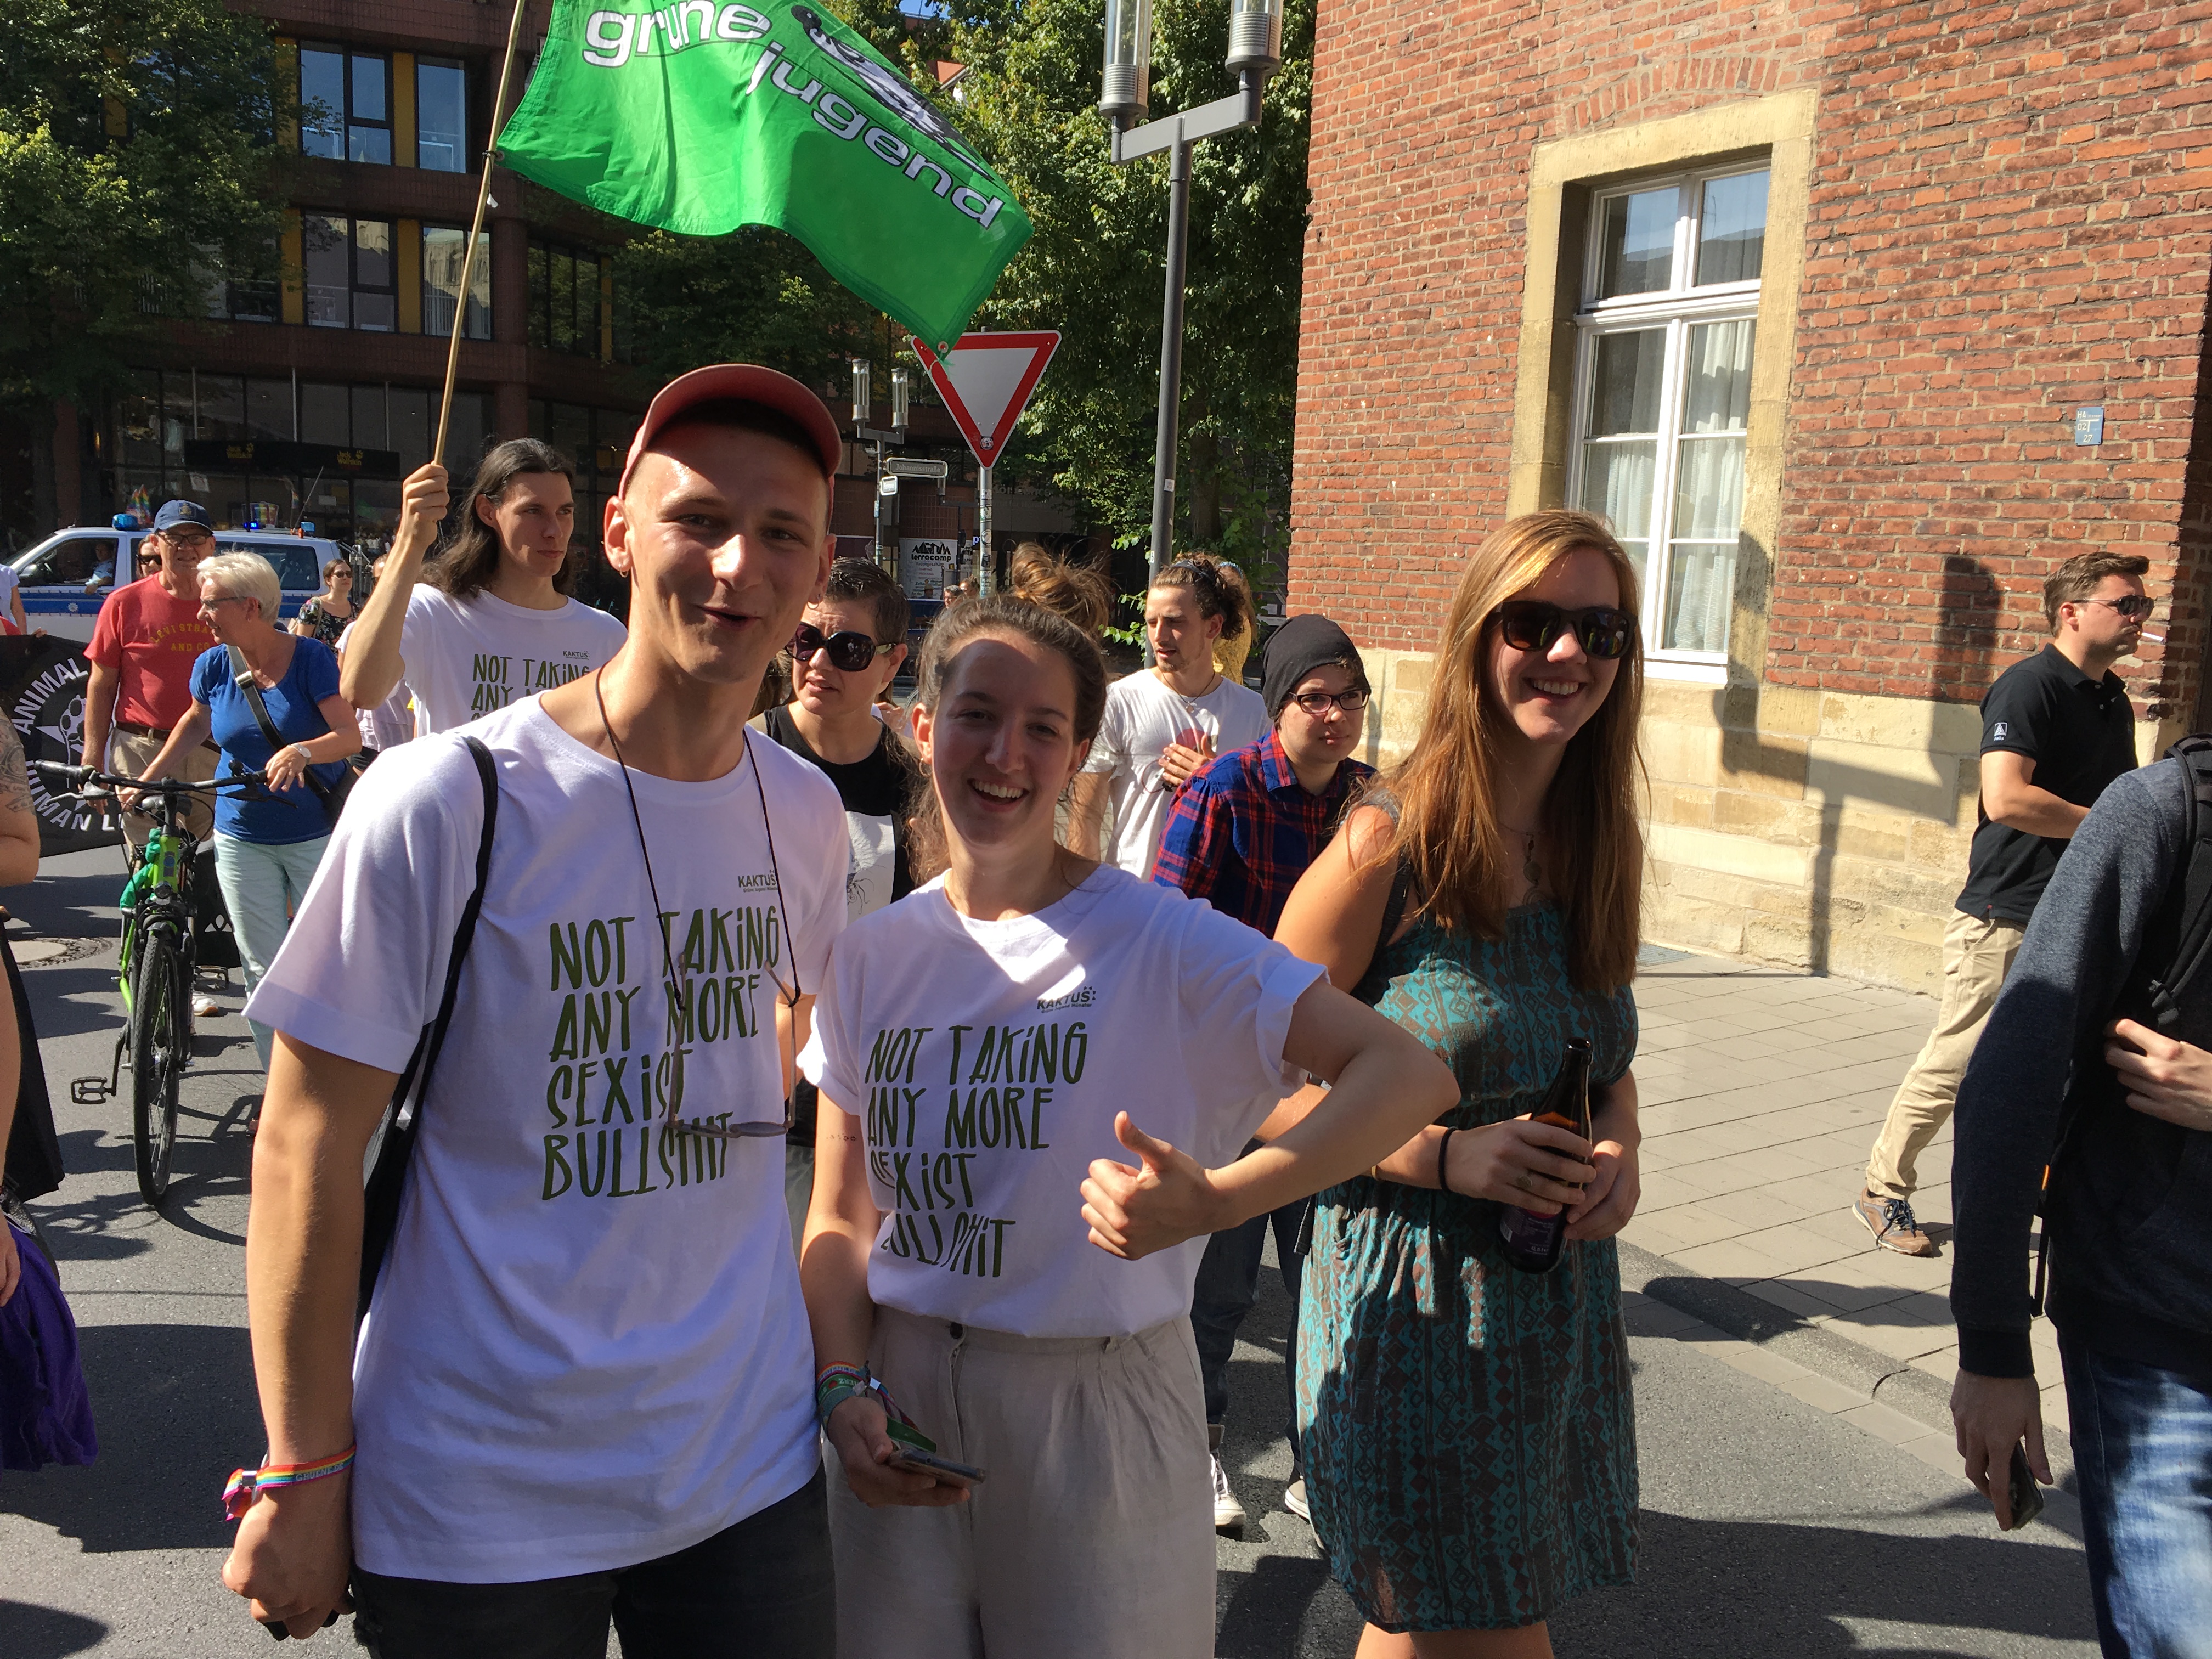 Viele Menschen auf einer Straße. Ein Mensch hält eine Fahne der Grünen Jugend.